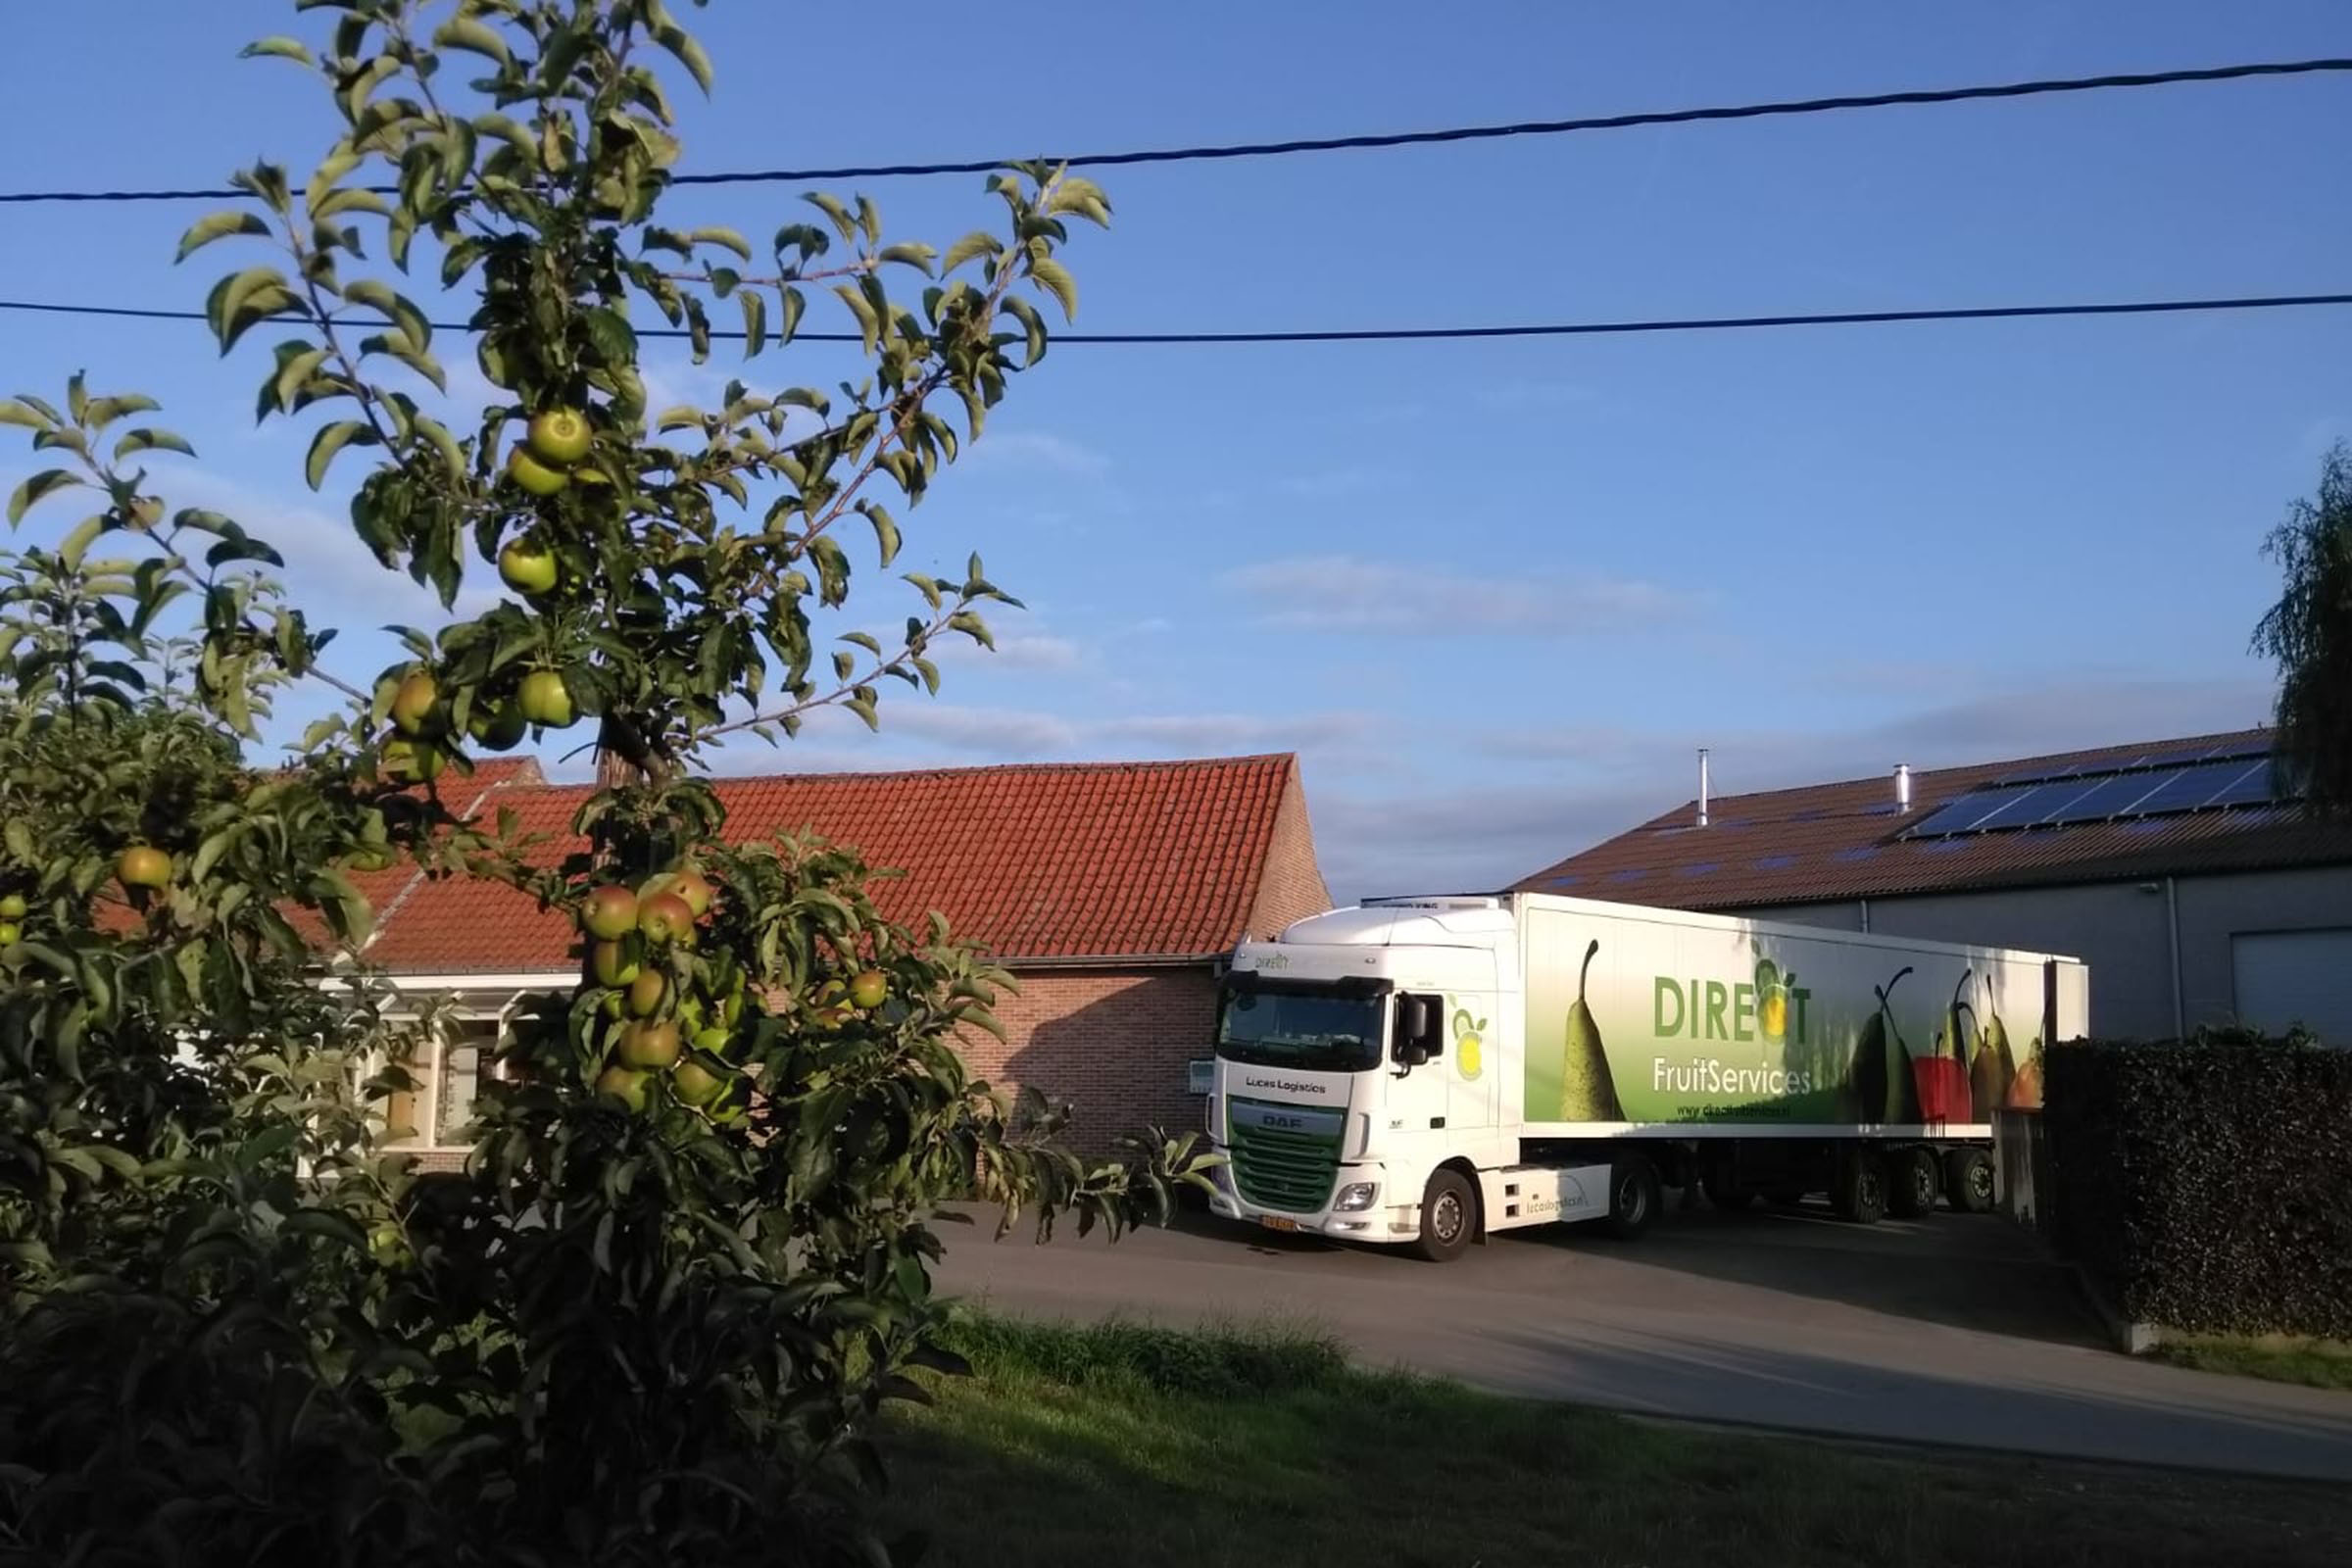 Vrachtwagen van Direct fruit service rijdt straat op.